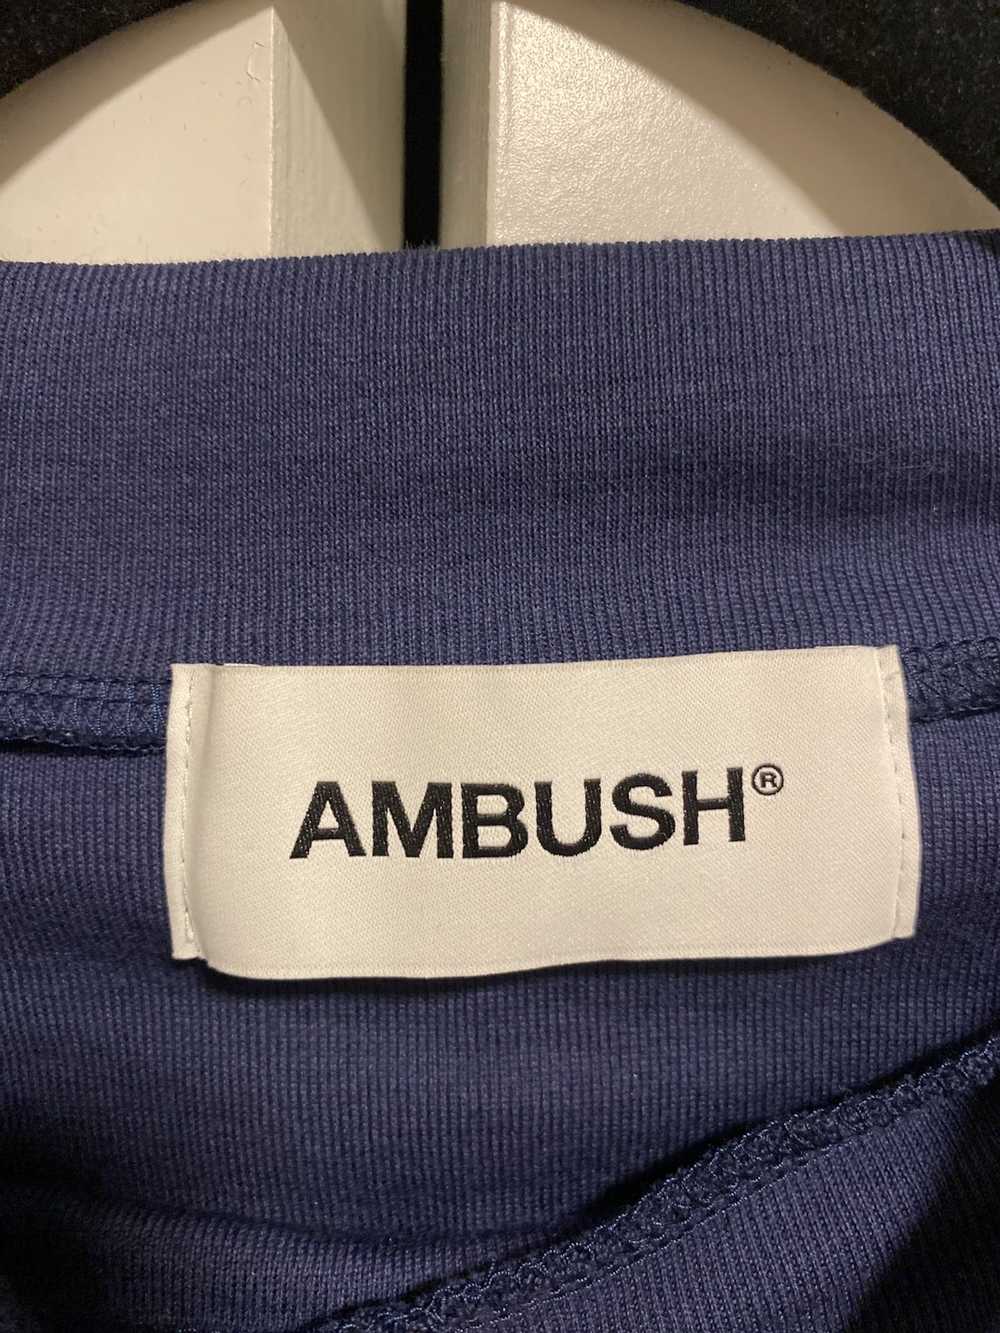 Ambush Design Ambush Tee - image 3